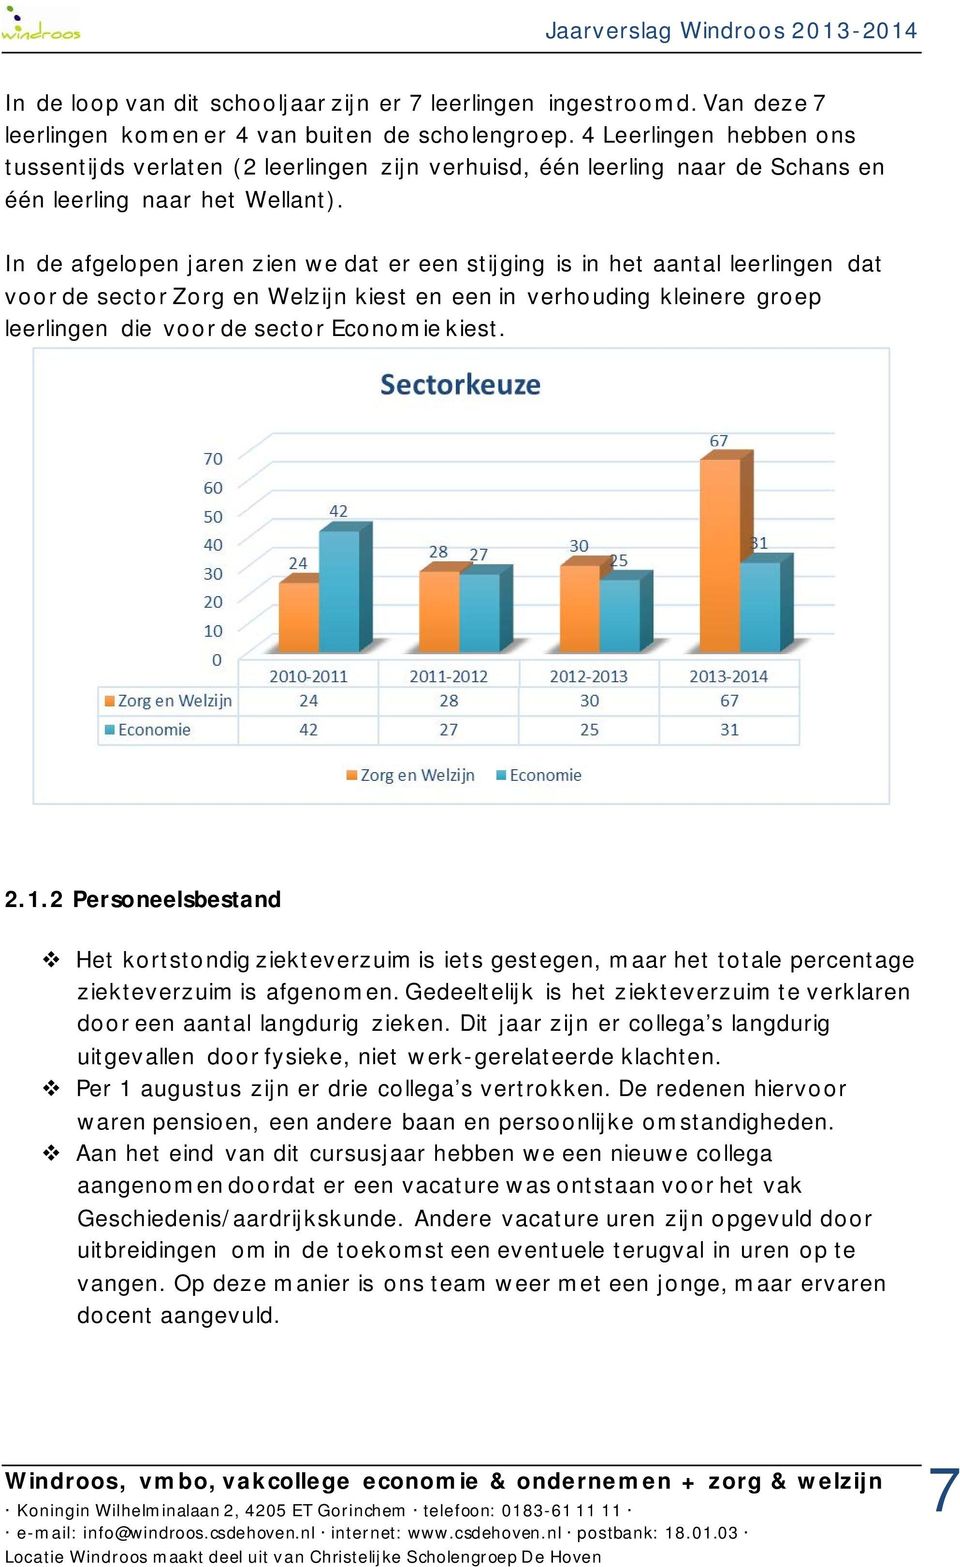 In de afgelopen jaren zien we dat er een stijging is in het aantal leerlingen dat voor de sector Zorg en Welzijn kiest en een in verhouding kleinere groep leerlingen die voor de sector Economie kiest.